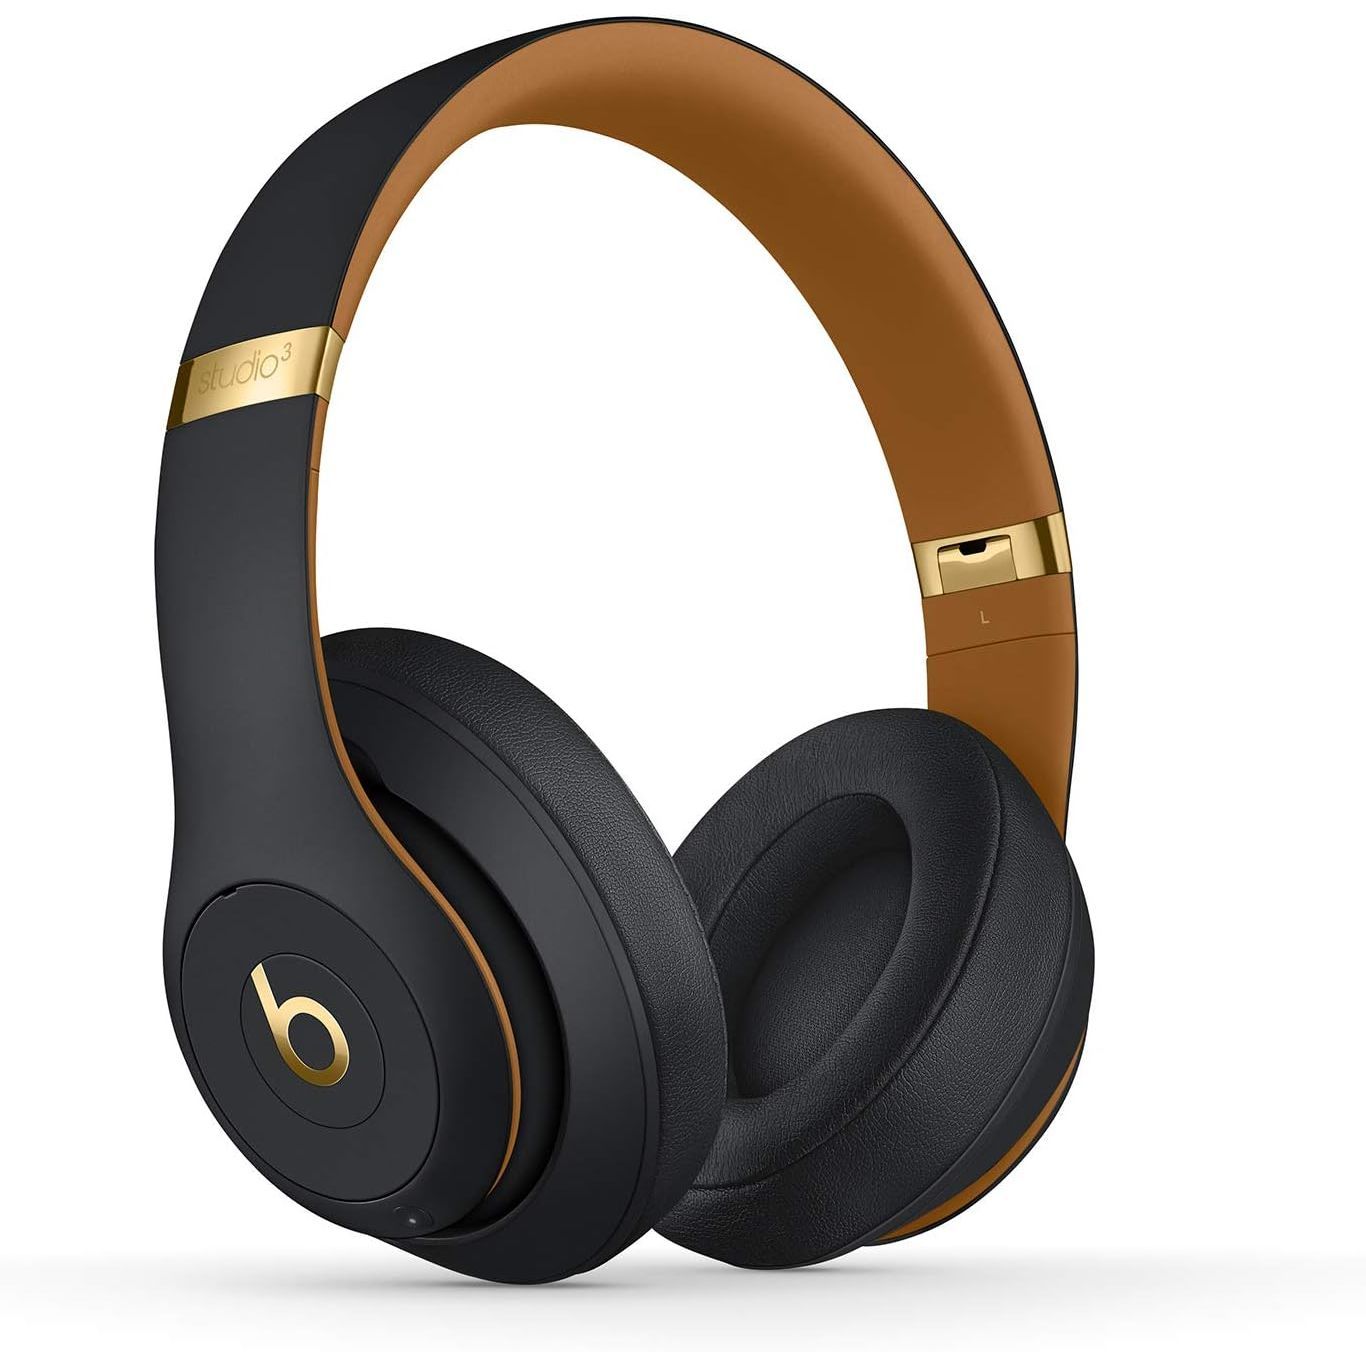 Beats Studio3 over-ear wireless headphones